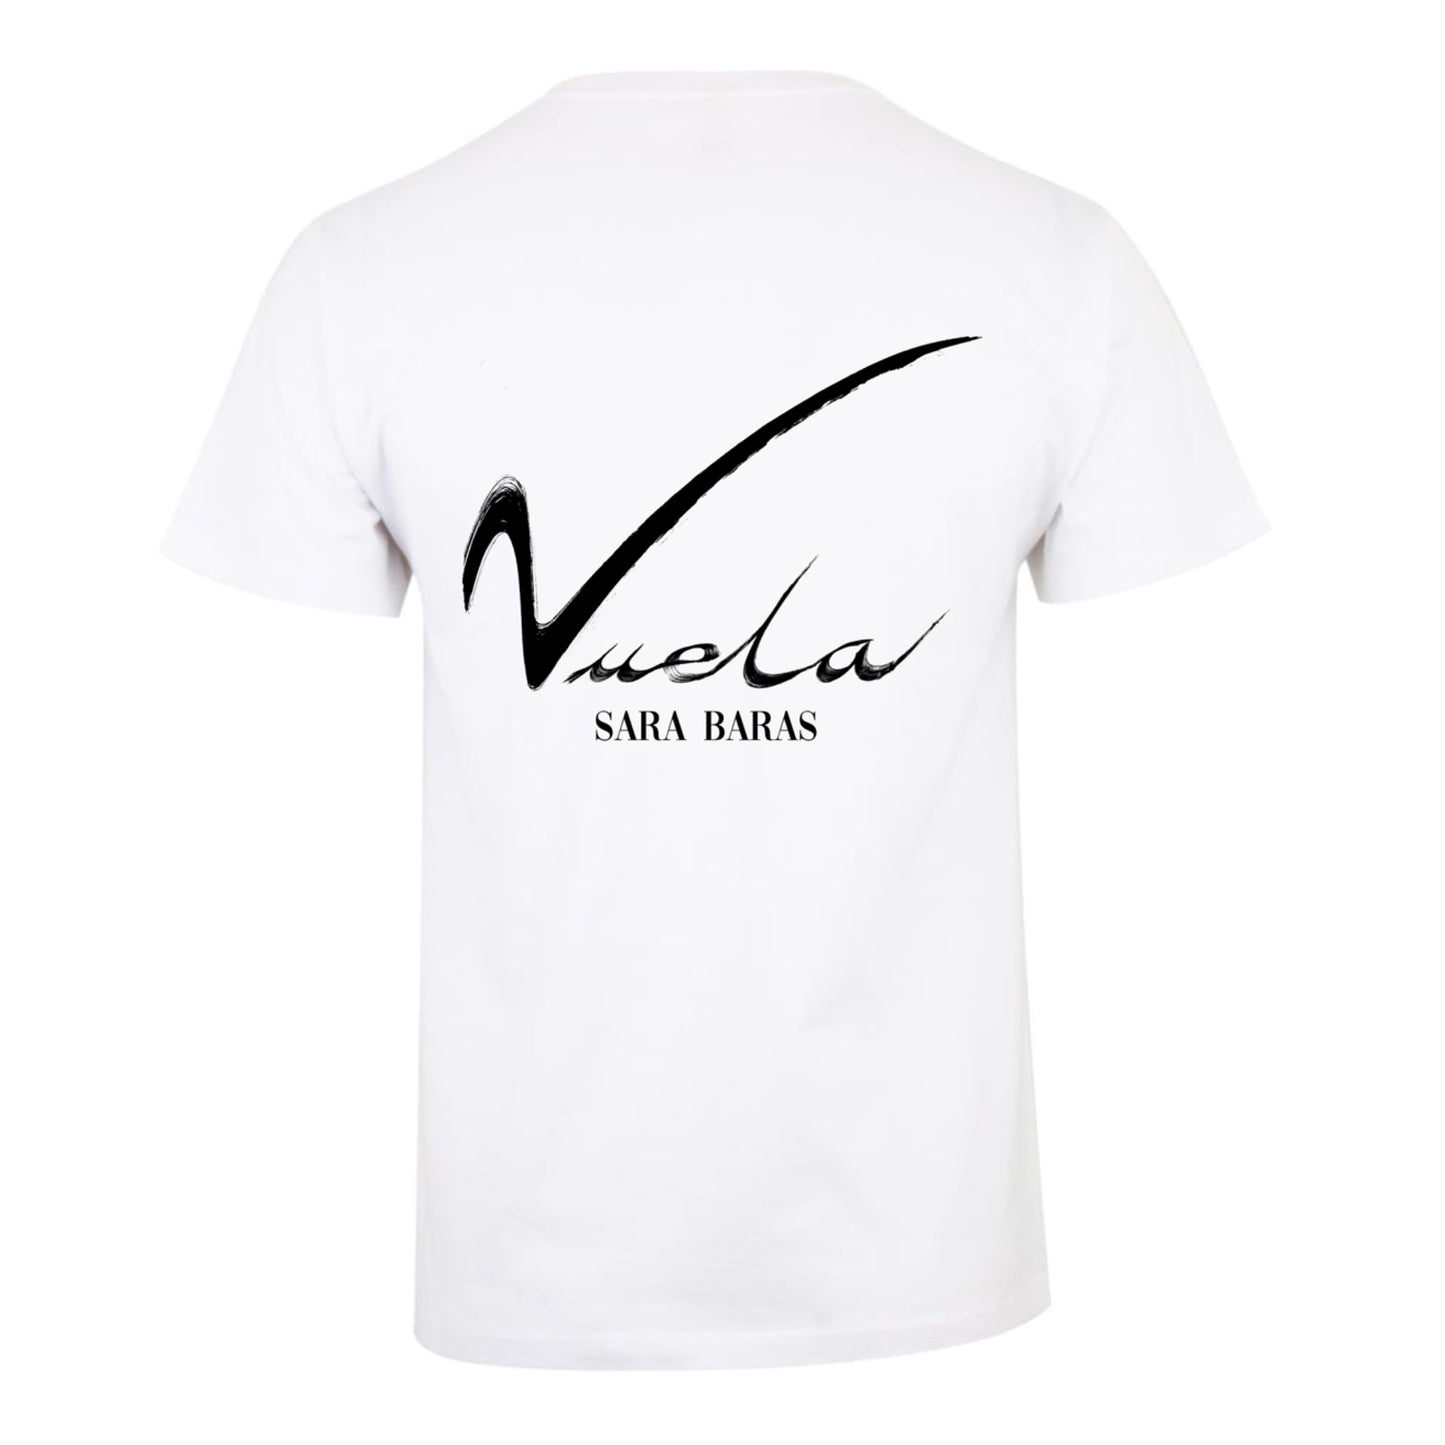 Camiseta Blanca "Vuela"